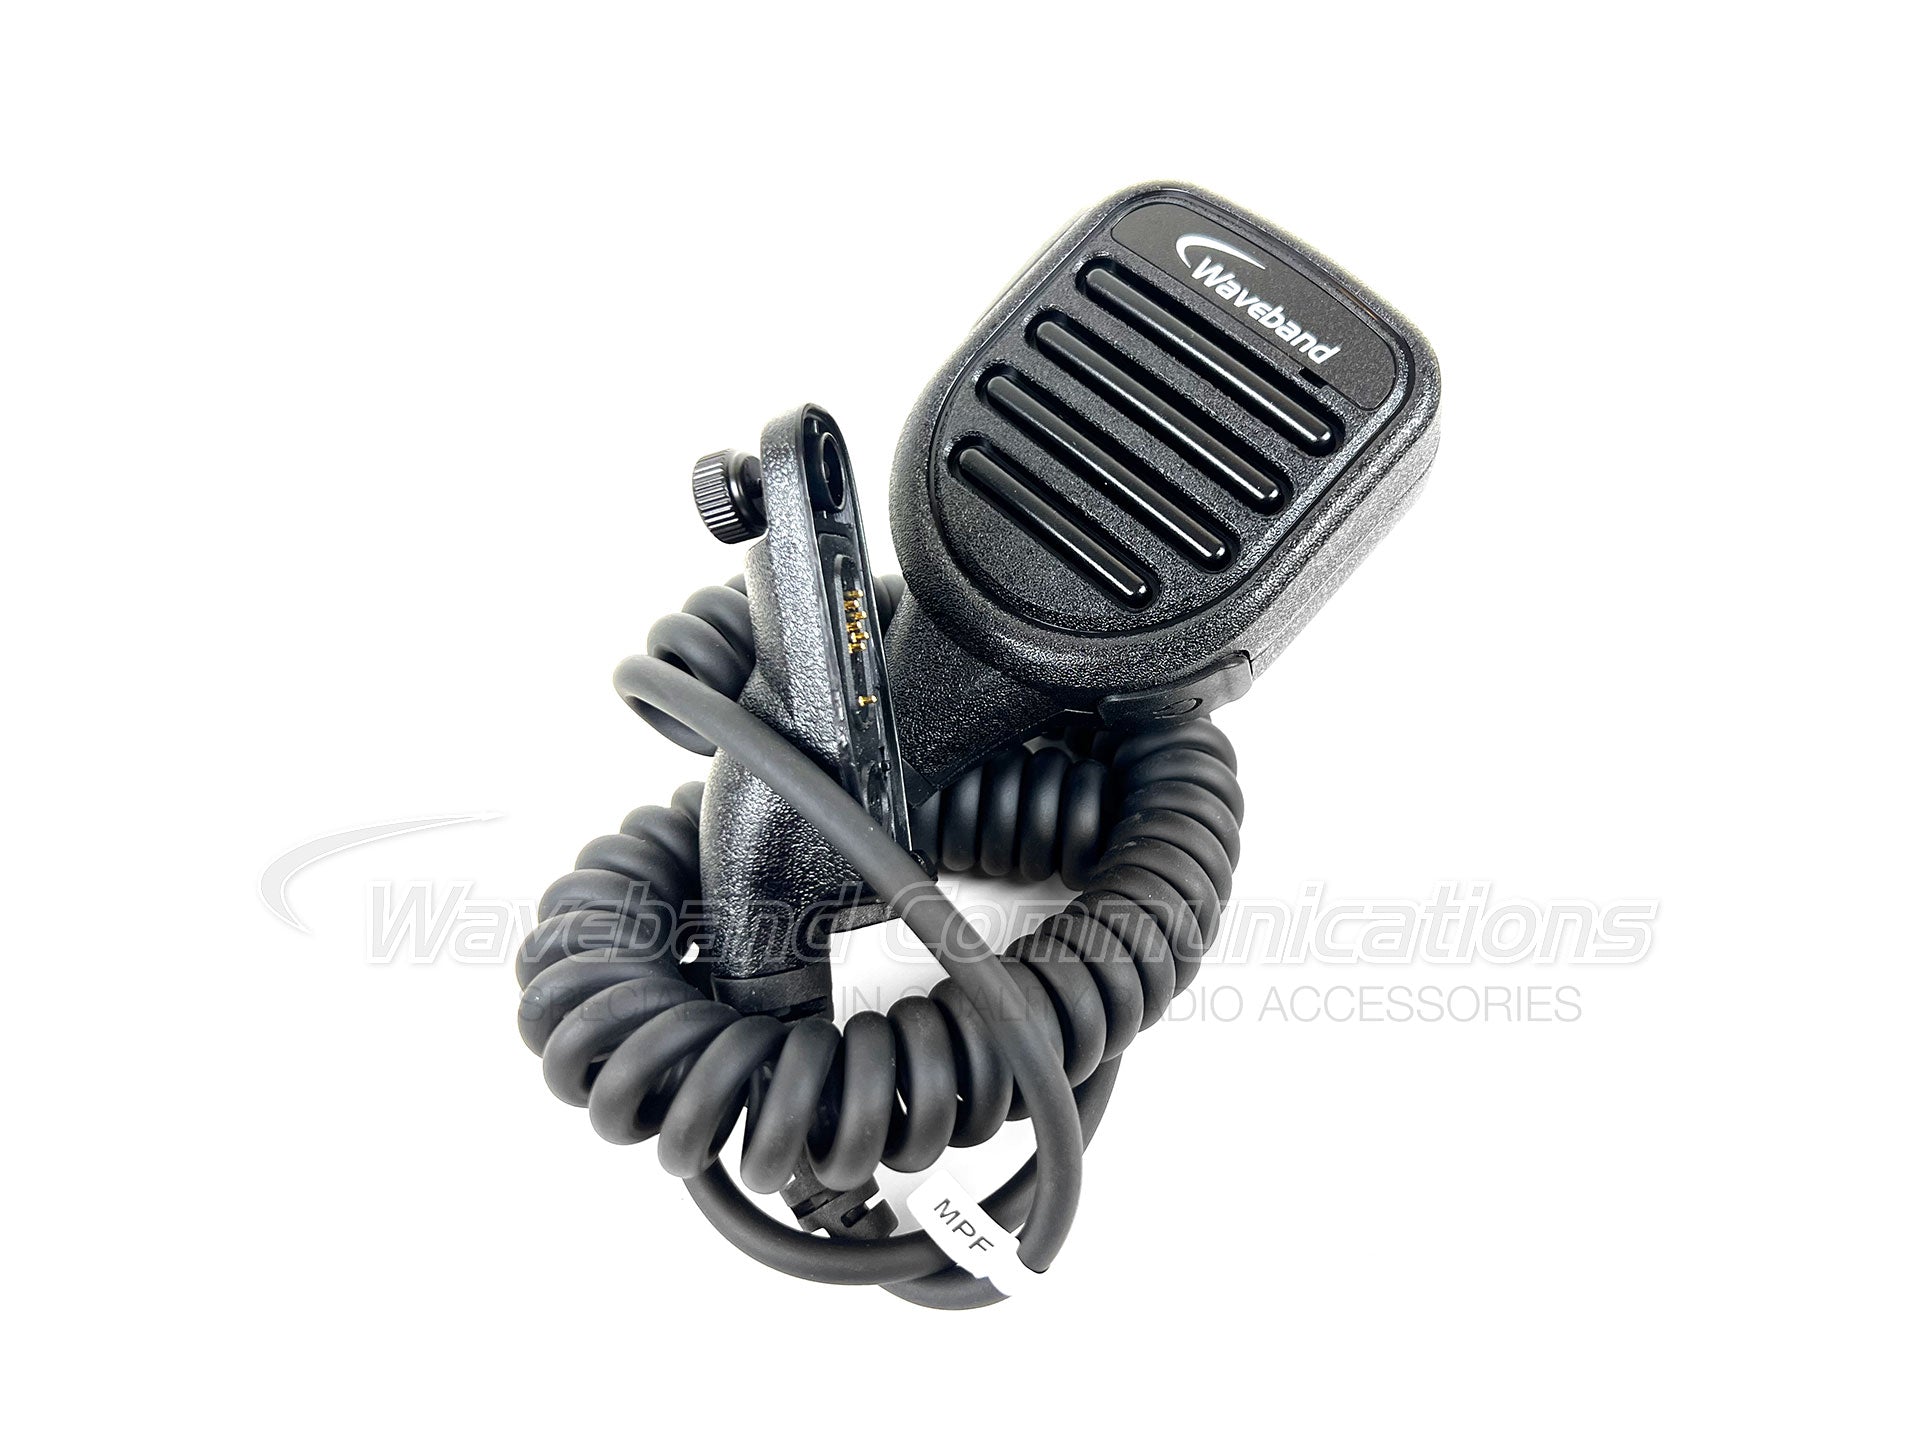 PMMN4025 externe luidsprekermicrofoon voor Motorola XPR TRBO-radio's. WB # WX-8010-M-P08